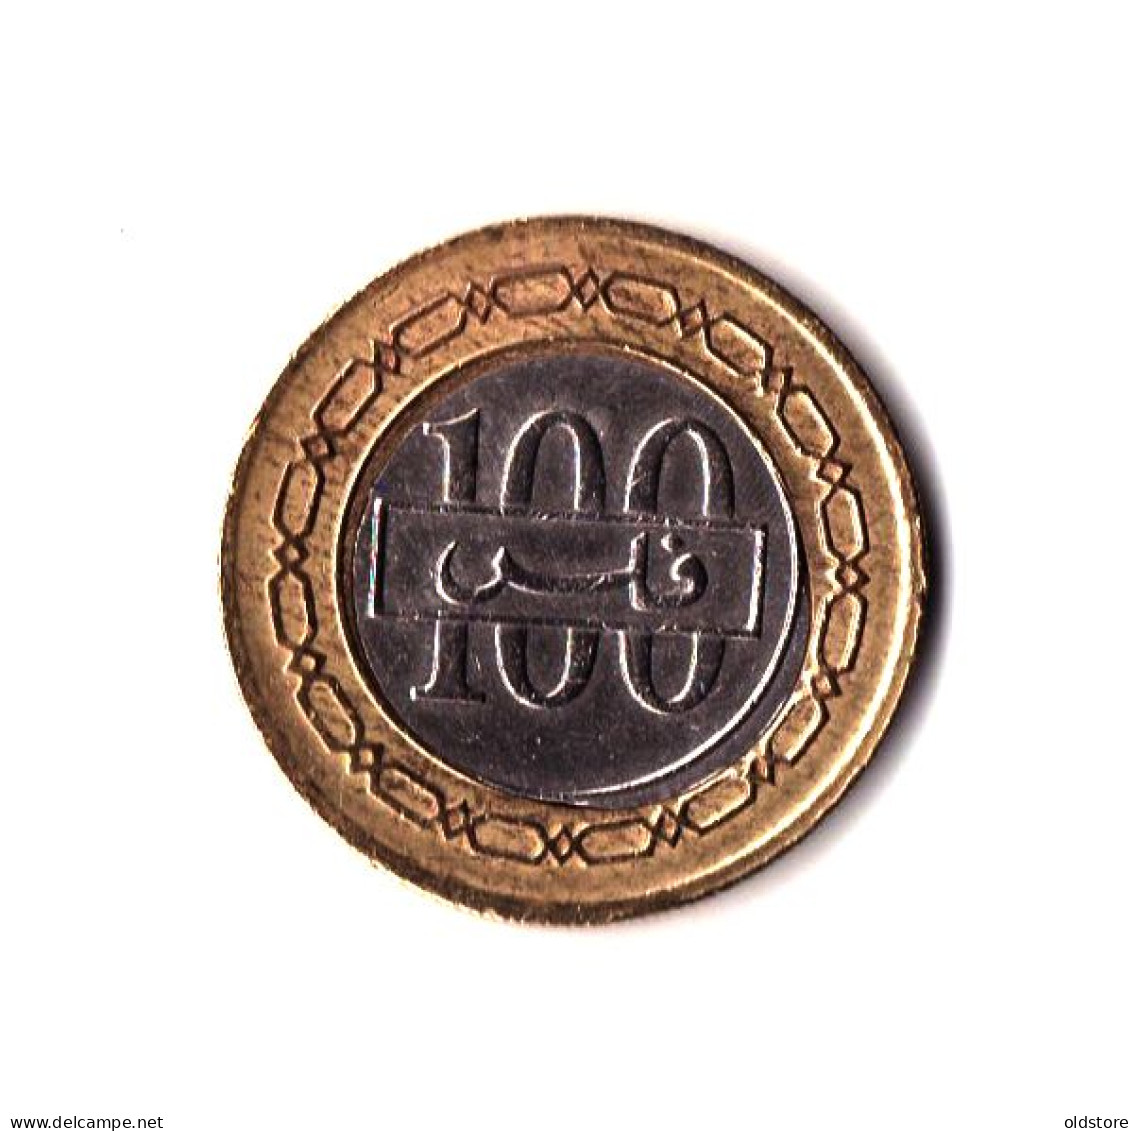 Bahrain Coins - State Of Bahrain 100 Fils Old Rare ERROR Coin - ND 1995 #4 - Bahrain